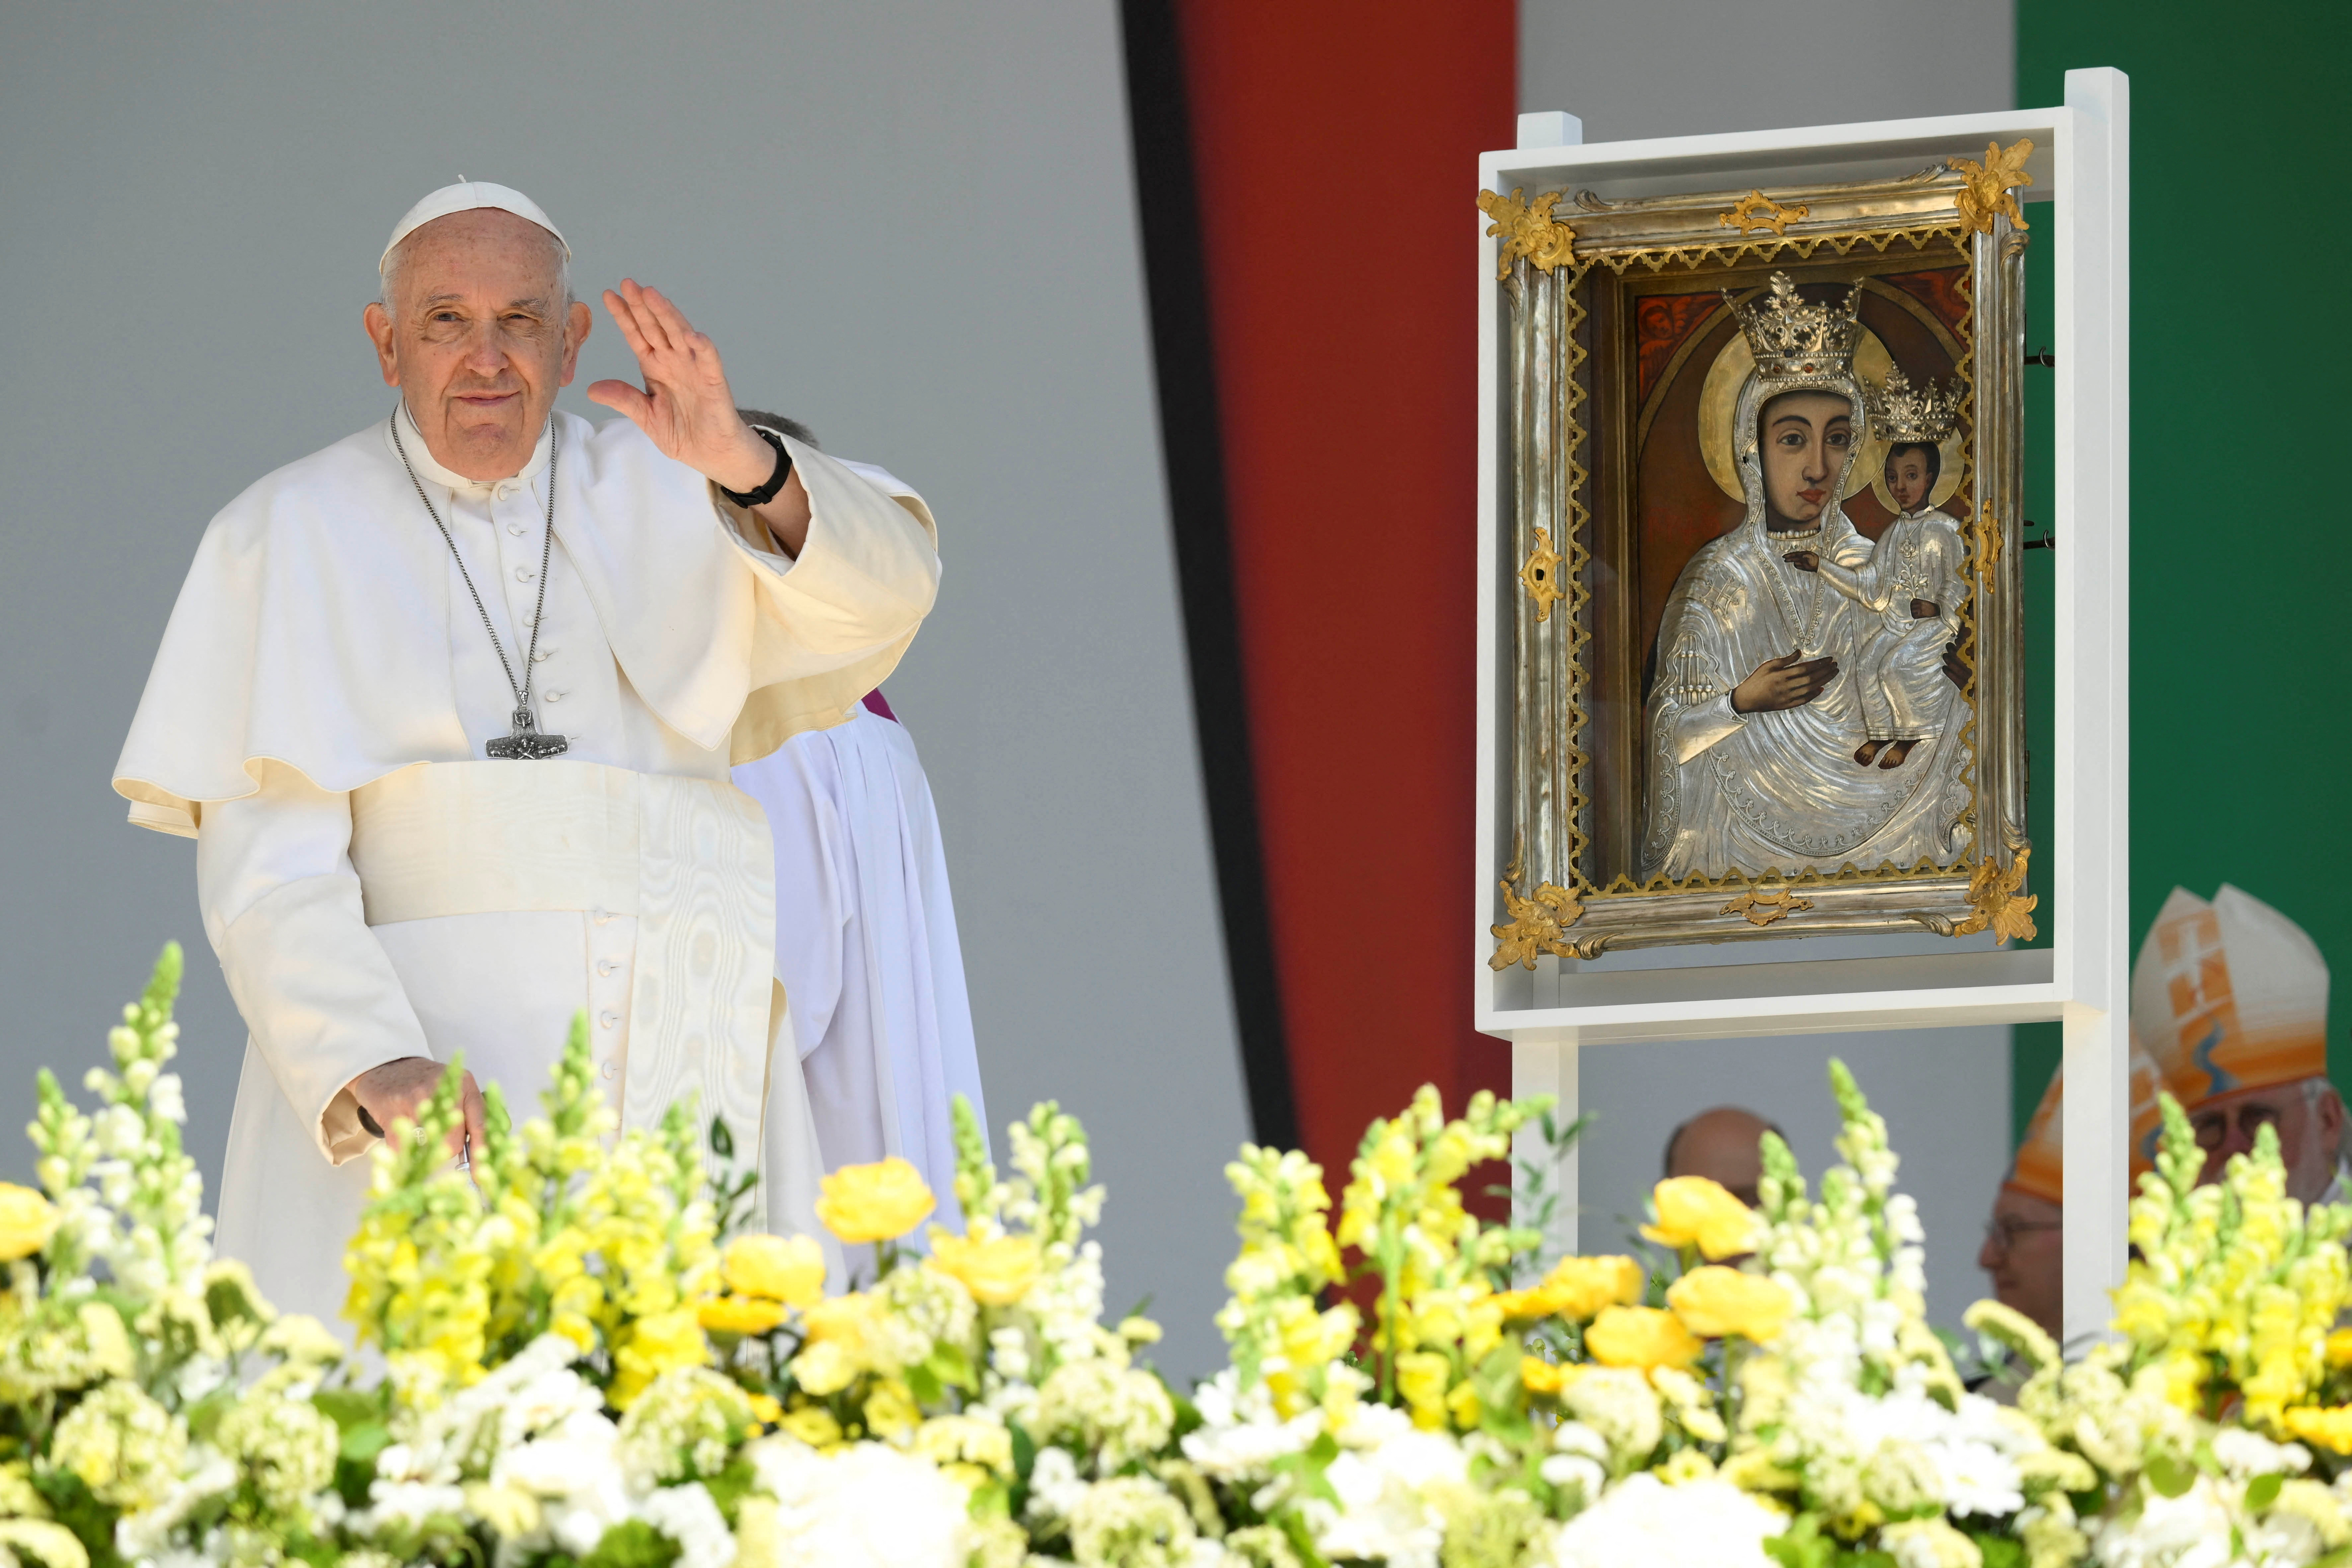 El papa estuvo durante tres días en una visita oficial a Hungría. (FOTO: REUTERS)